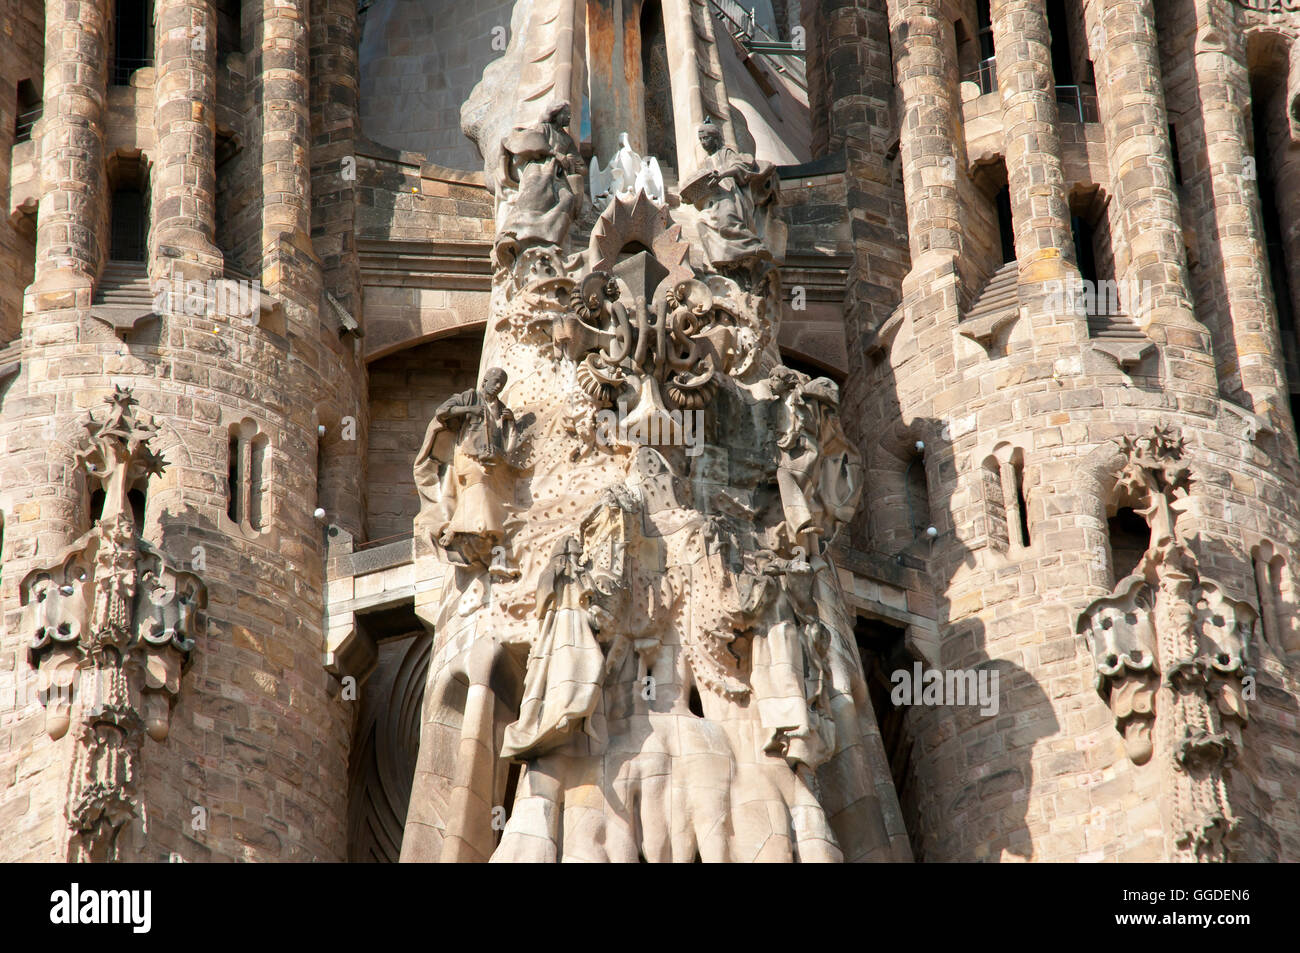 Façade de la basilique Sagrada Familia libre - Barcelone - Espagne Banque D'Images